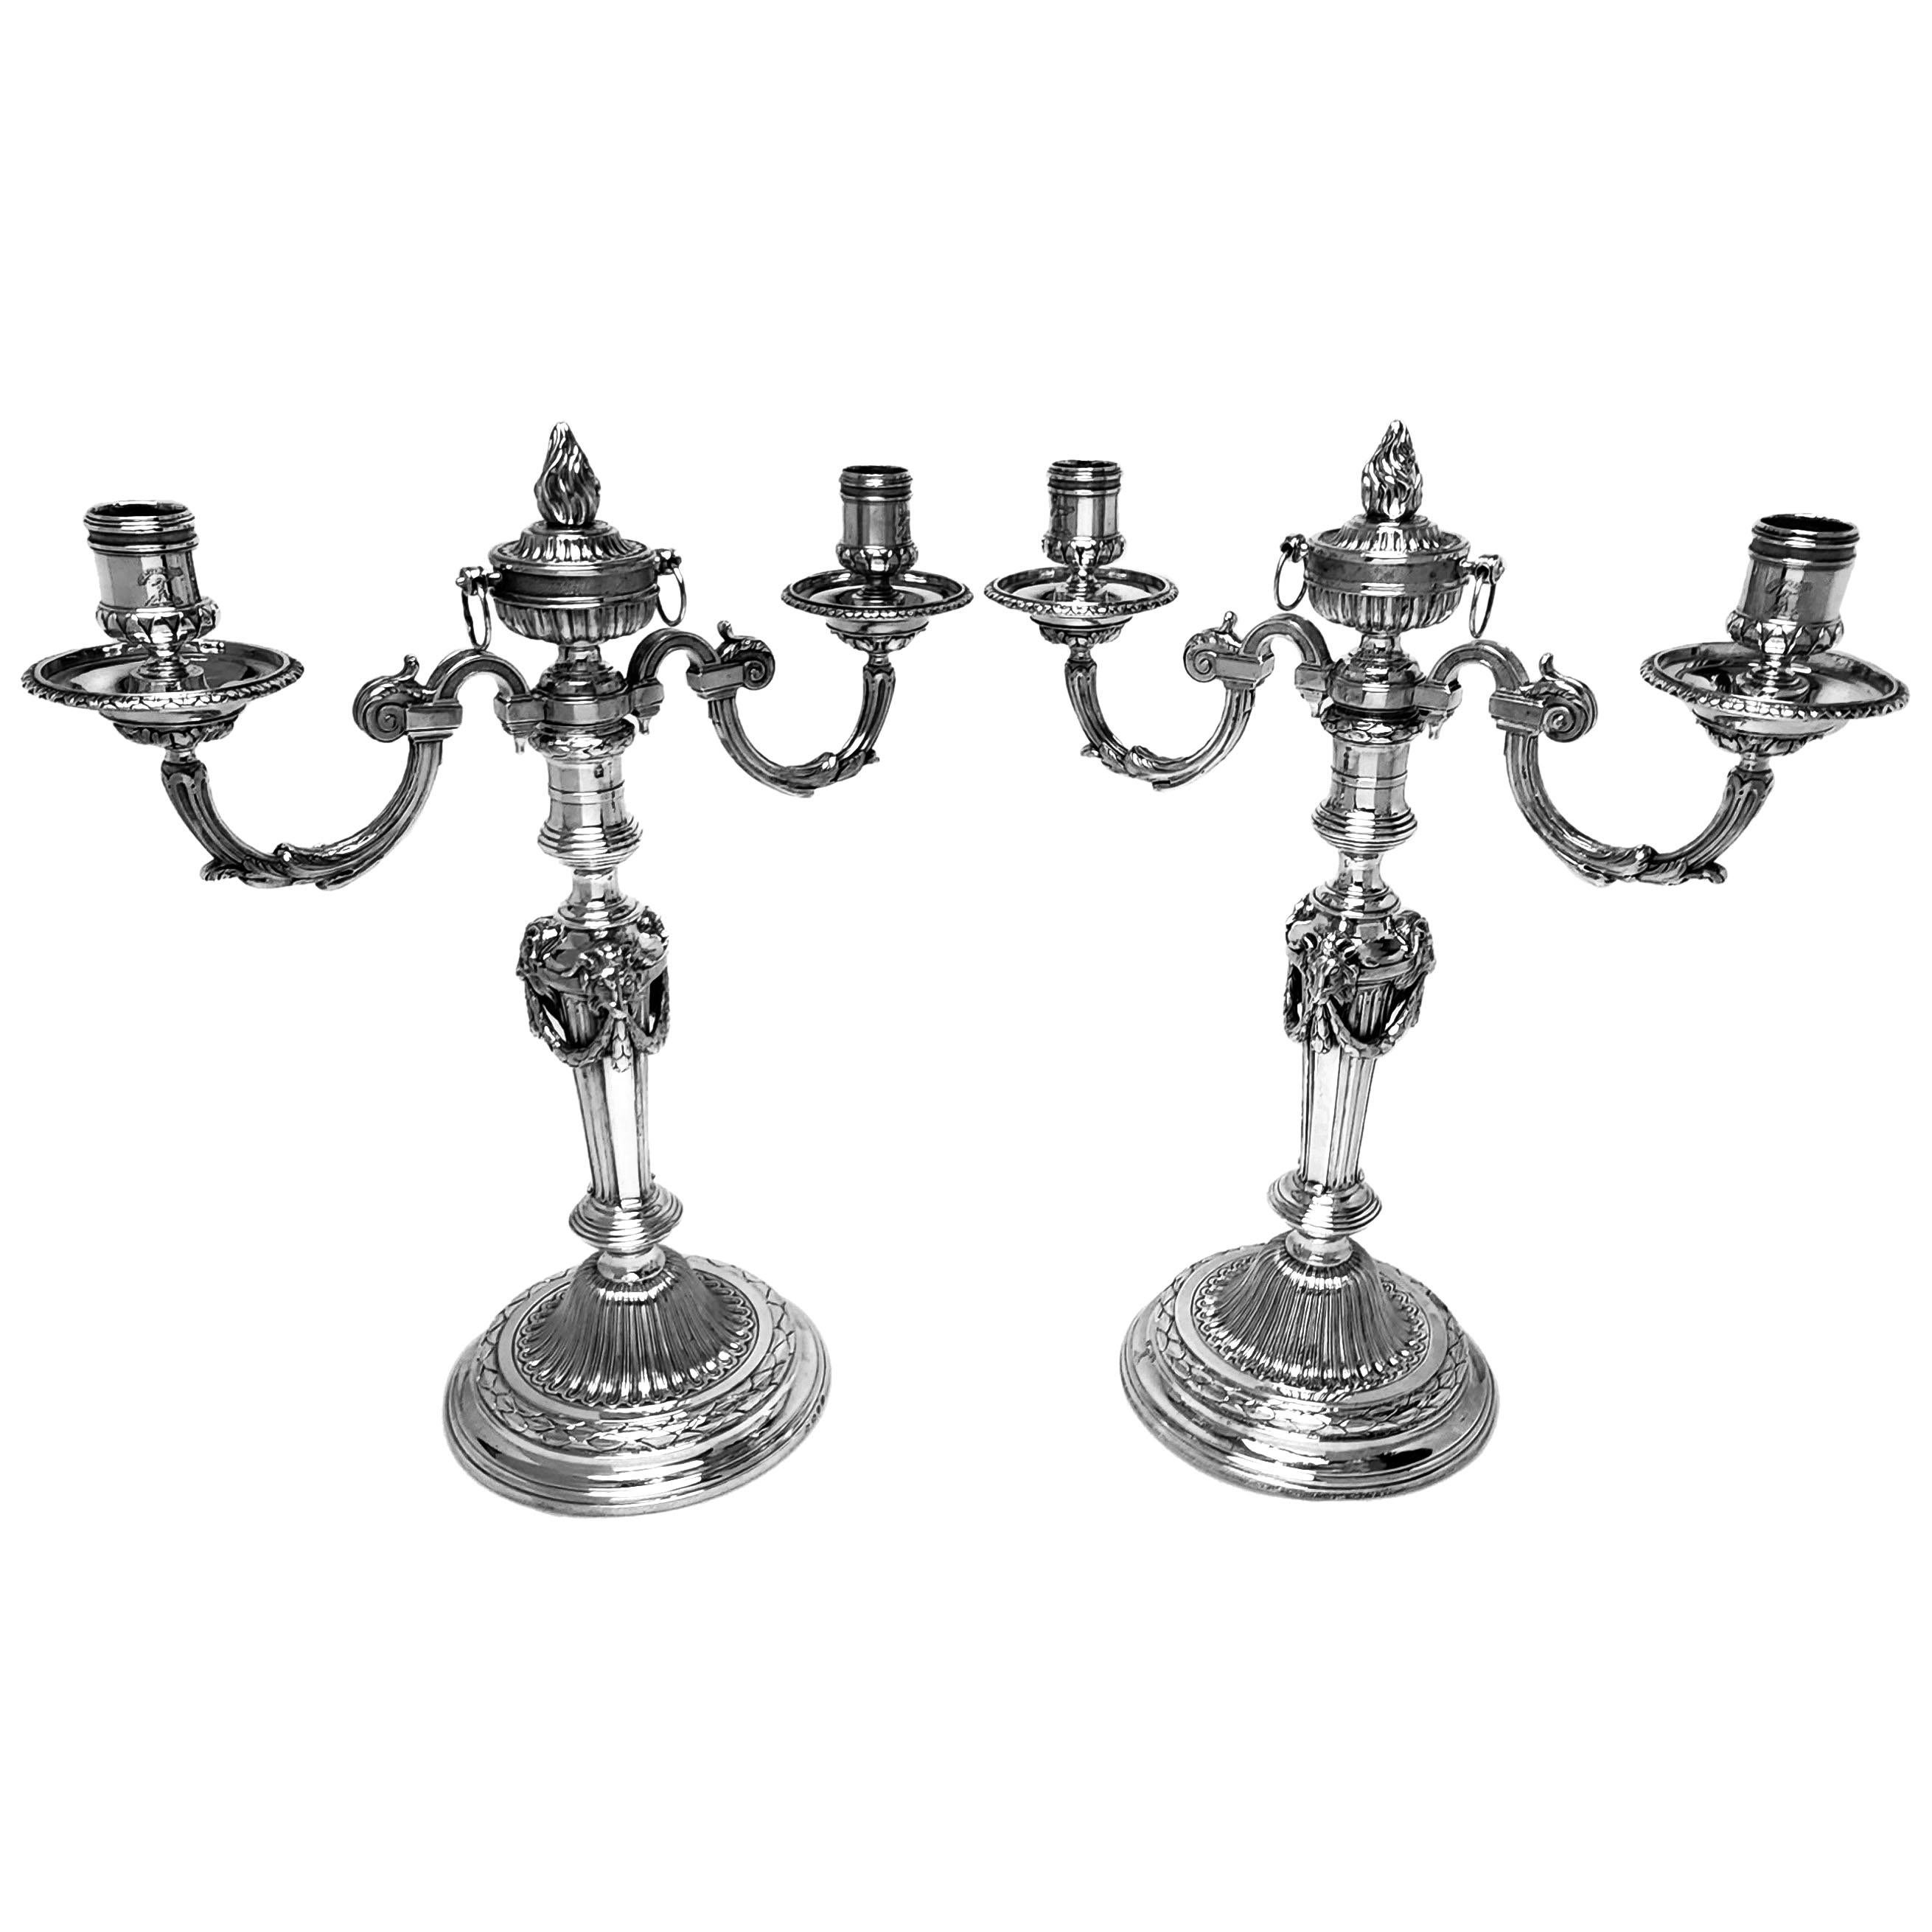 Une paire de magnifiques chandeliers à deux lumières en argent massif de style néo-classique Adams de George III qui peuvent être convertis en chandeliers en enlevant les branches. Les candélabres ont des bases rondes décorées d'une bande de